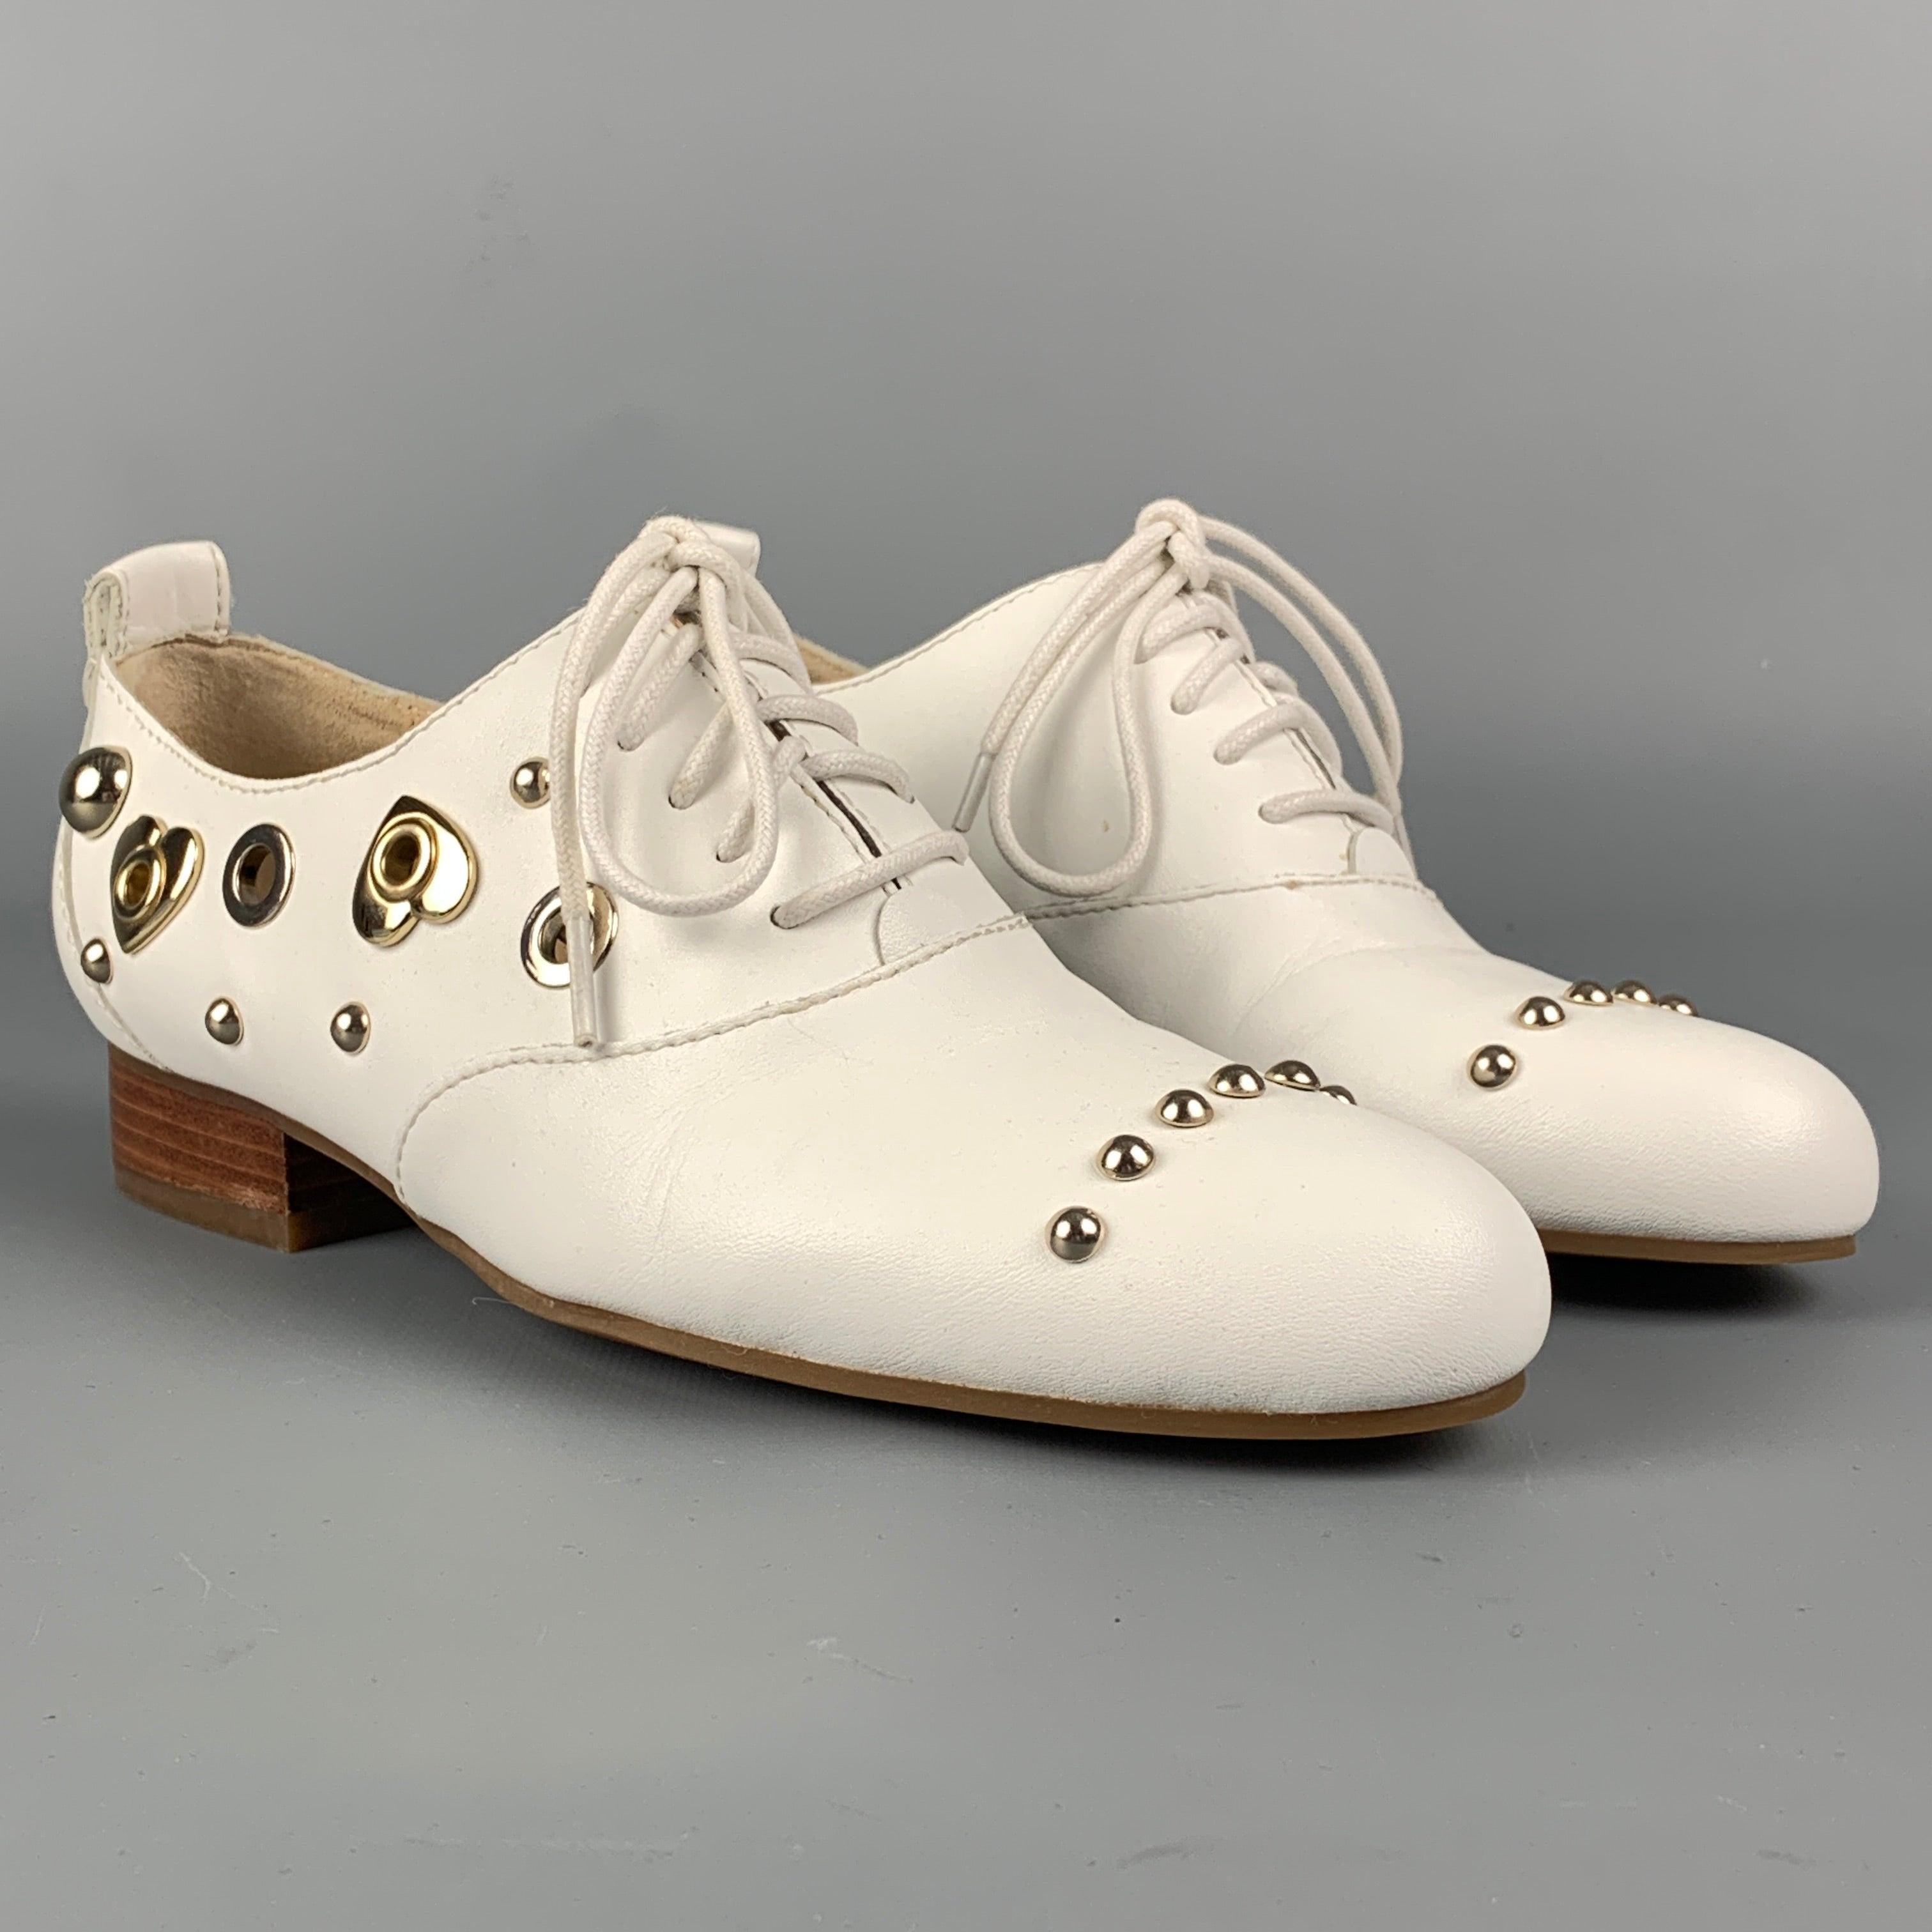 Les chaussures plates LOVE MOSCHINO sont en cuir blanc et présentent des détails cloutés, un talon haut et une fermeture à lacets.
Très bien
Etat d'occasion. 

Marqué :  
35.5Semelle d'usure : 9.5 pouces  x 3 pouces 
  
  
 
Référence :